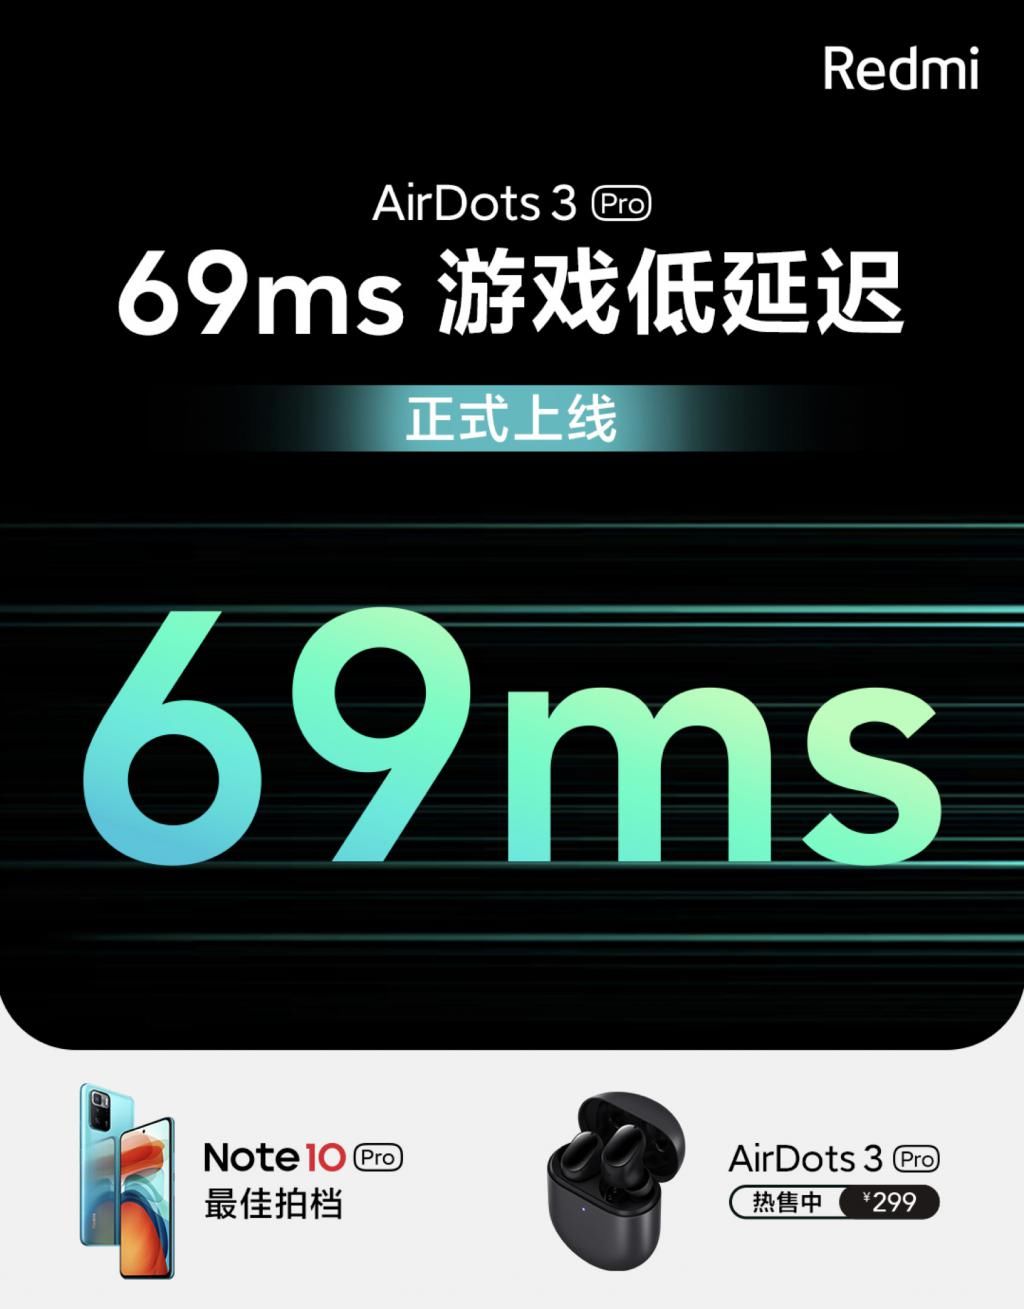 延迟|低至69ms！红米AirDots 3 Pro游戏低延迟功能上线